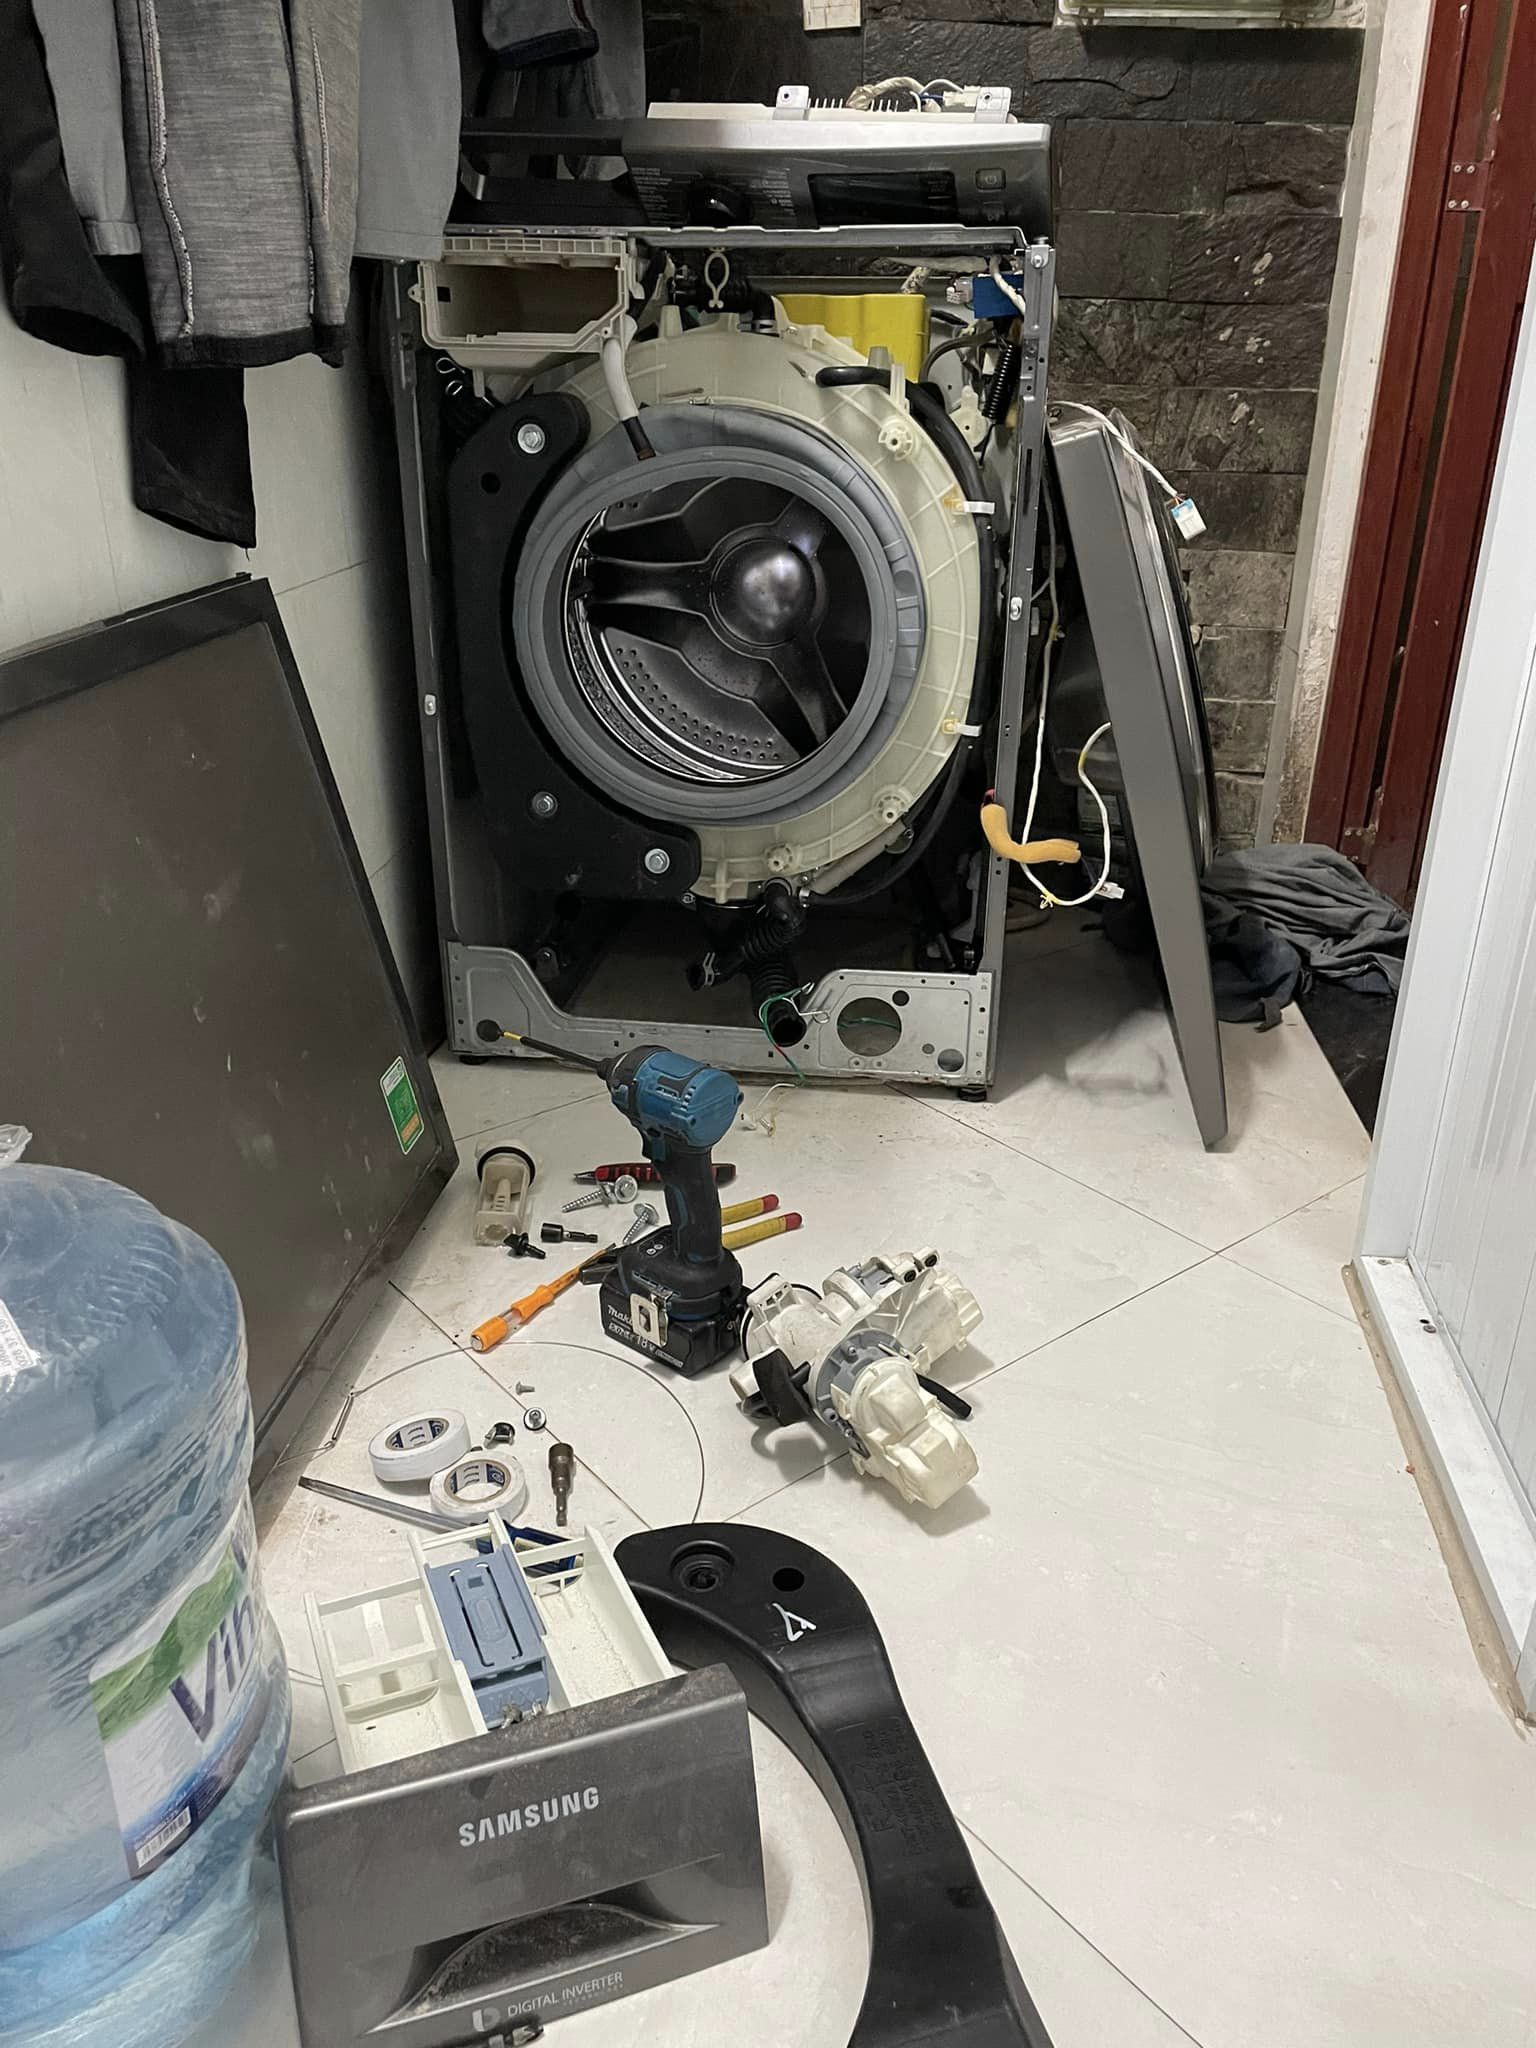 Trung tâm sửa chữa máy giặt tại Nam Sách Hải Dương uy tín giá rẻ